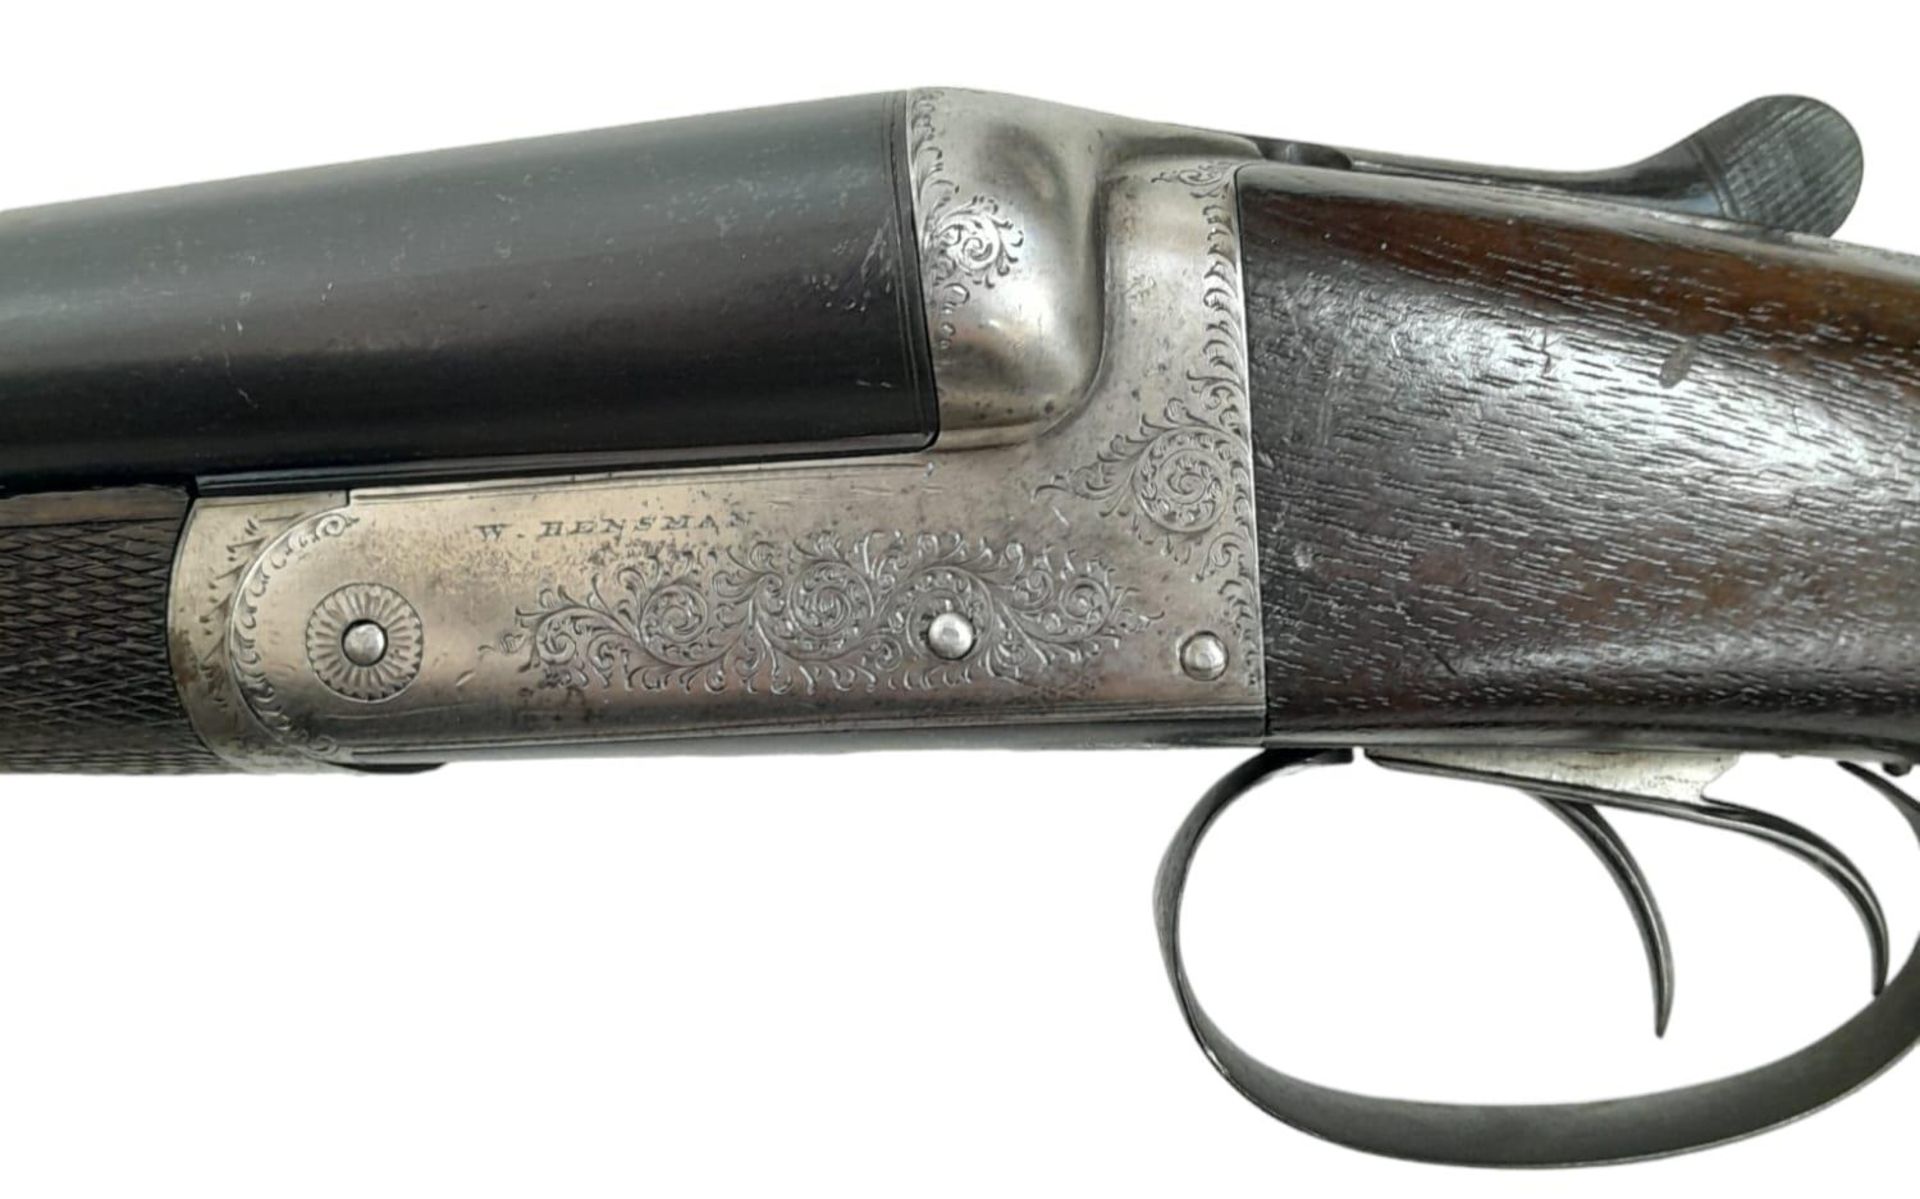 A Vintage Deactivated 12 Gauge Side by Side Sawn-Off Shotgun. This British Rosson Hensman made gun - Bild 8 aus 11